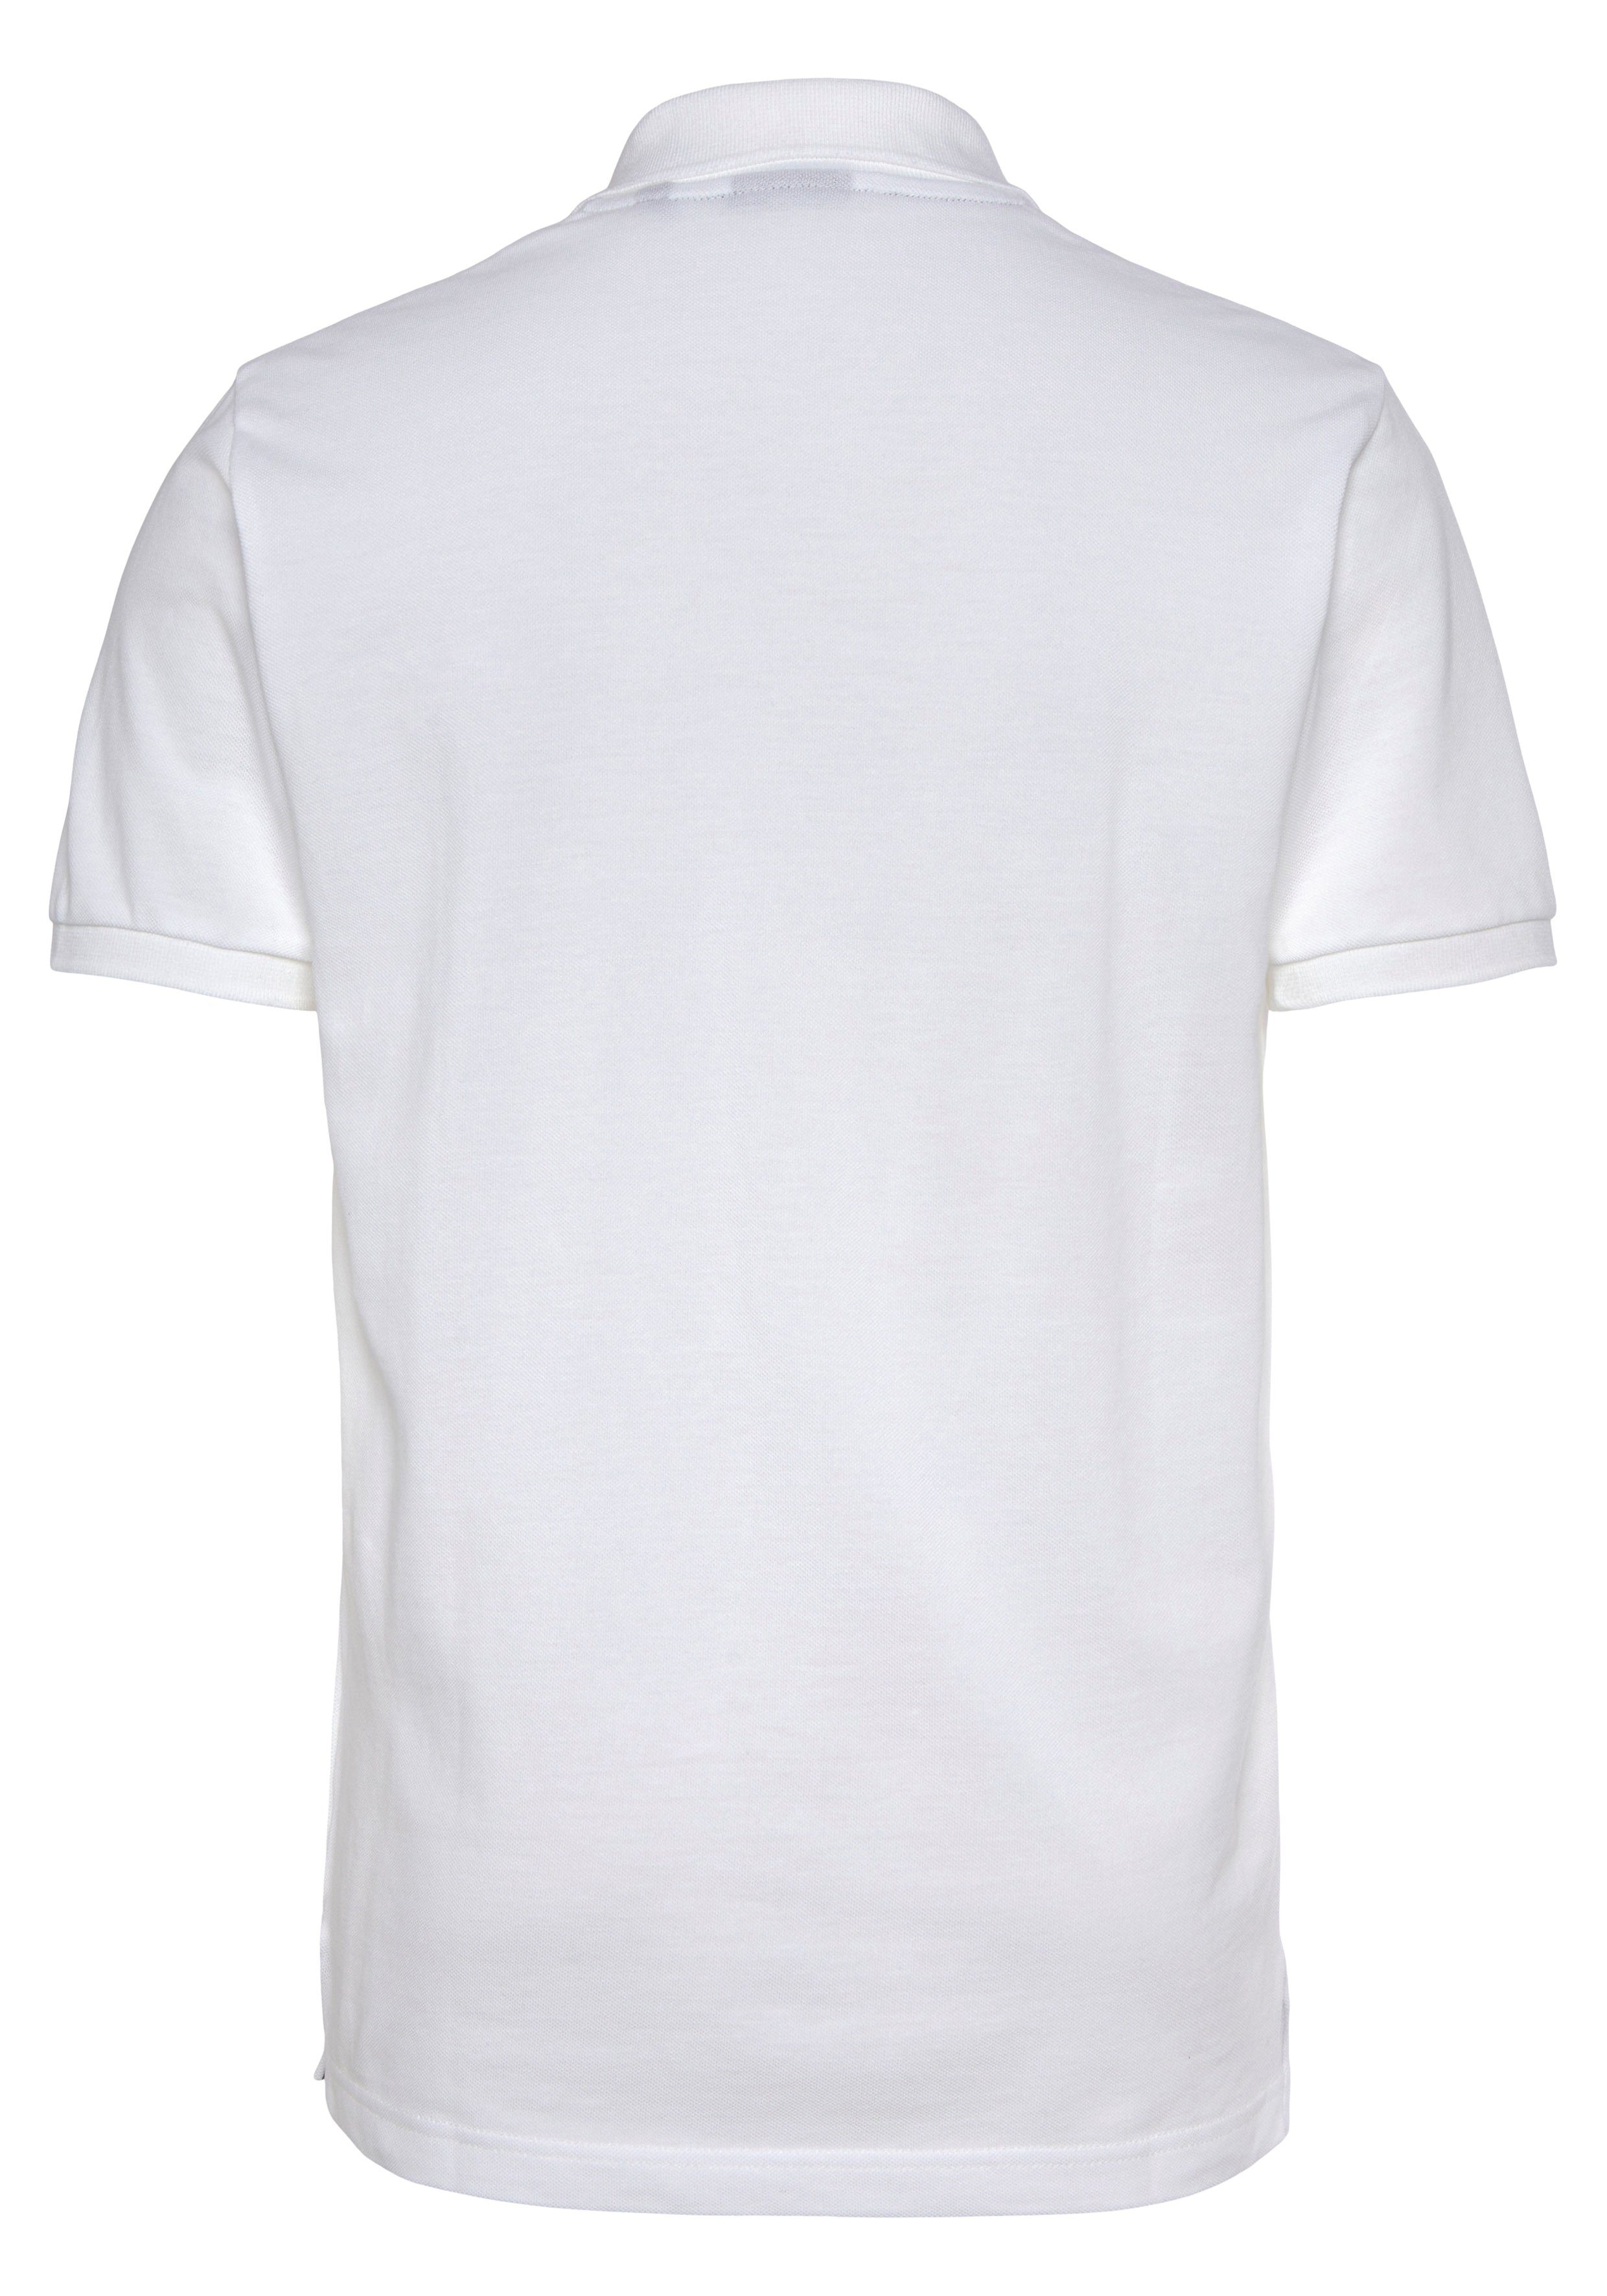 KA Casual, weiß MD. Premium Fit, Poloshirt Piqué-Polo Smart PIQUE Gant Regular Qualität Shirt, RUGGER